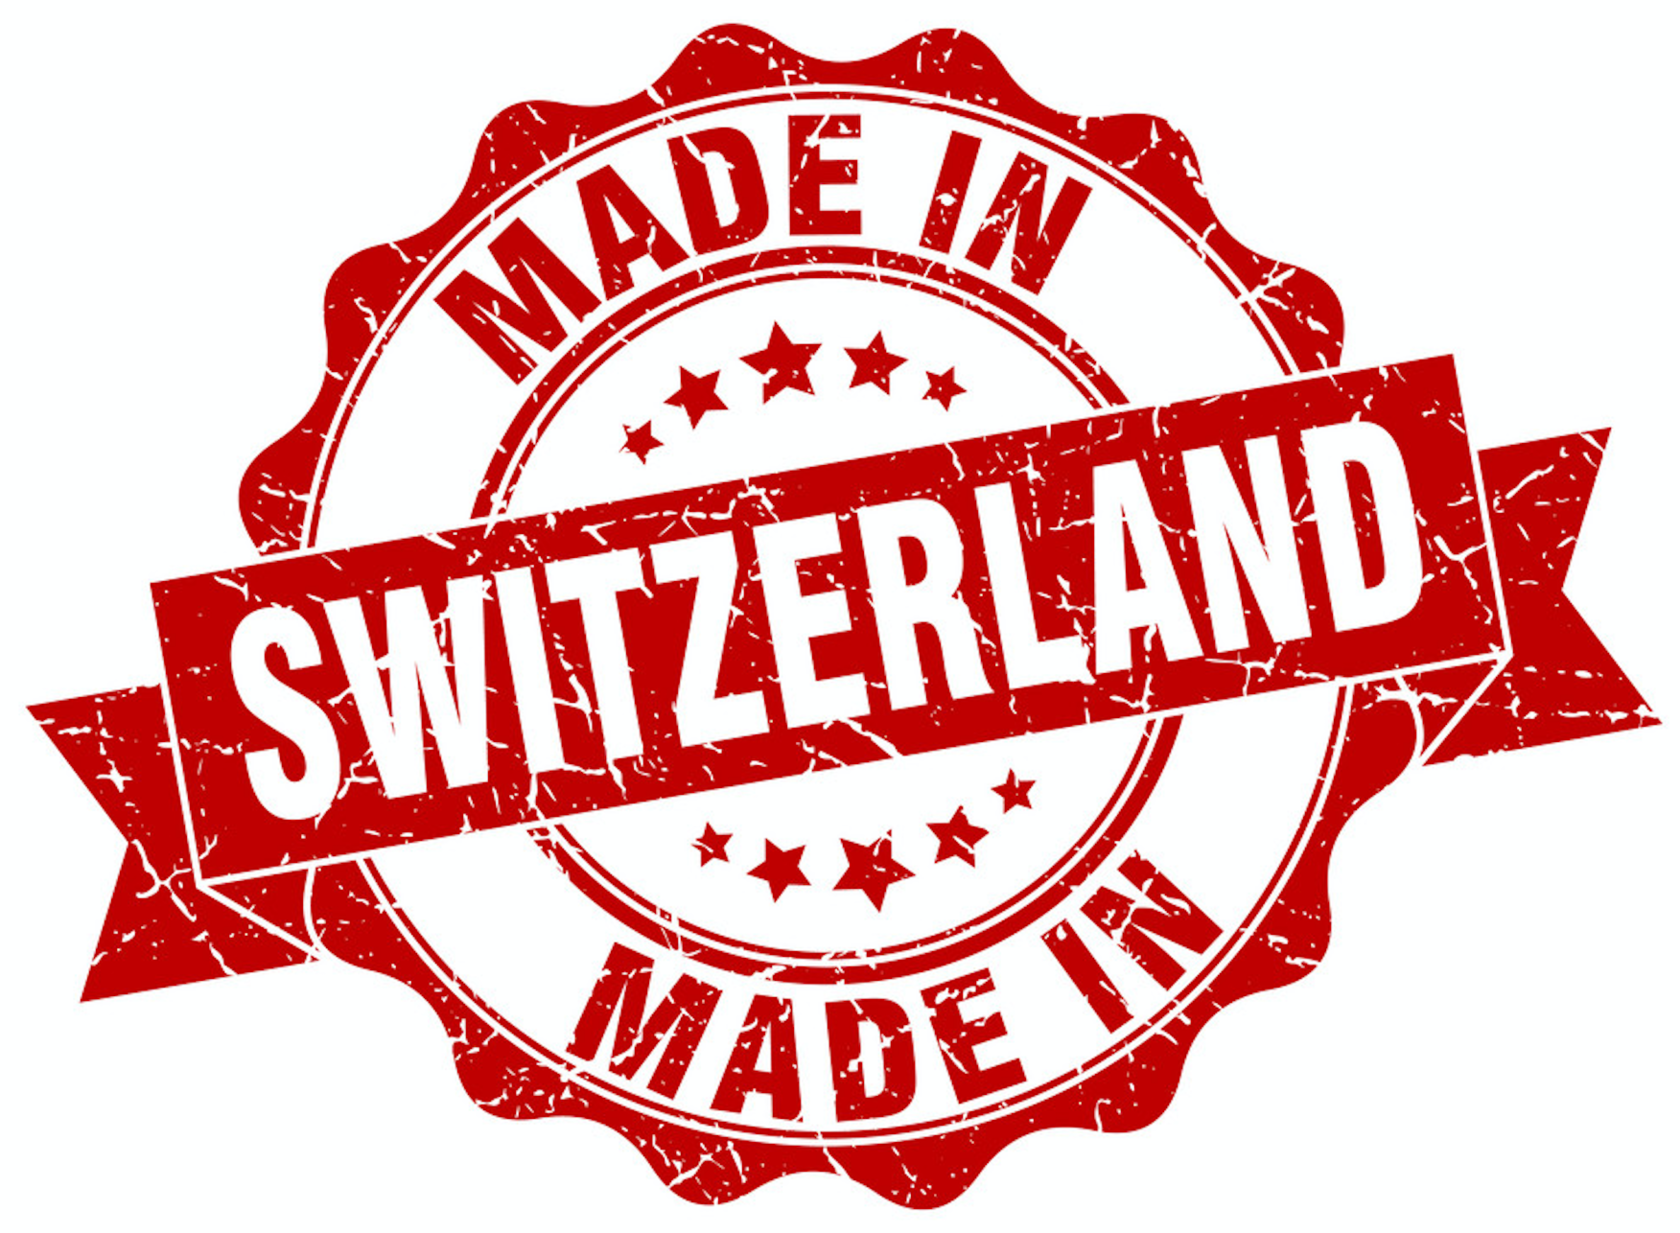 Made in Швейцария. Печать made in. Сделано в Швейцарии. Швейцарское качество. Маде ин румыния